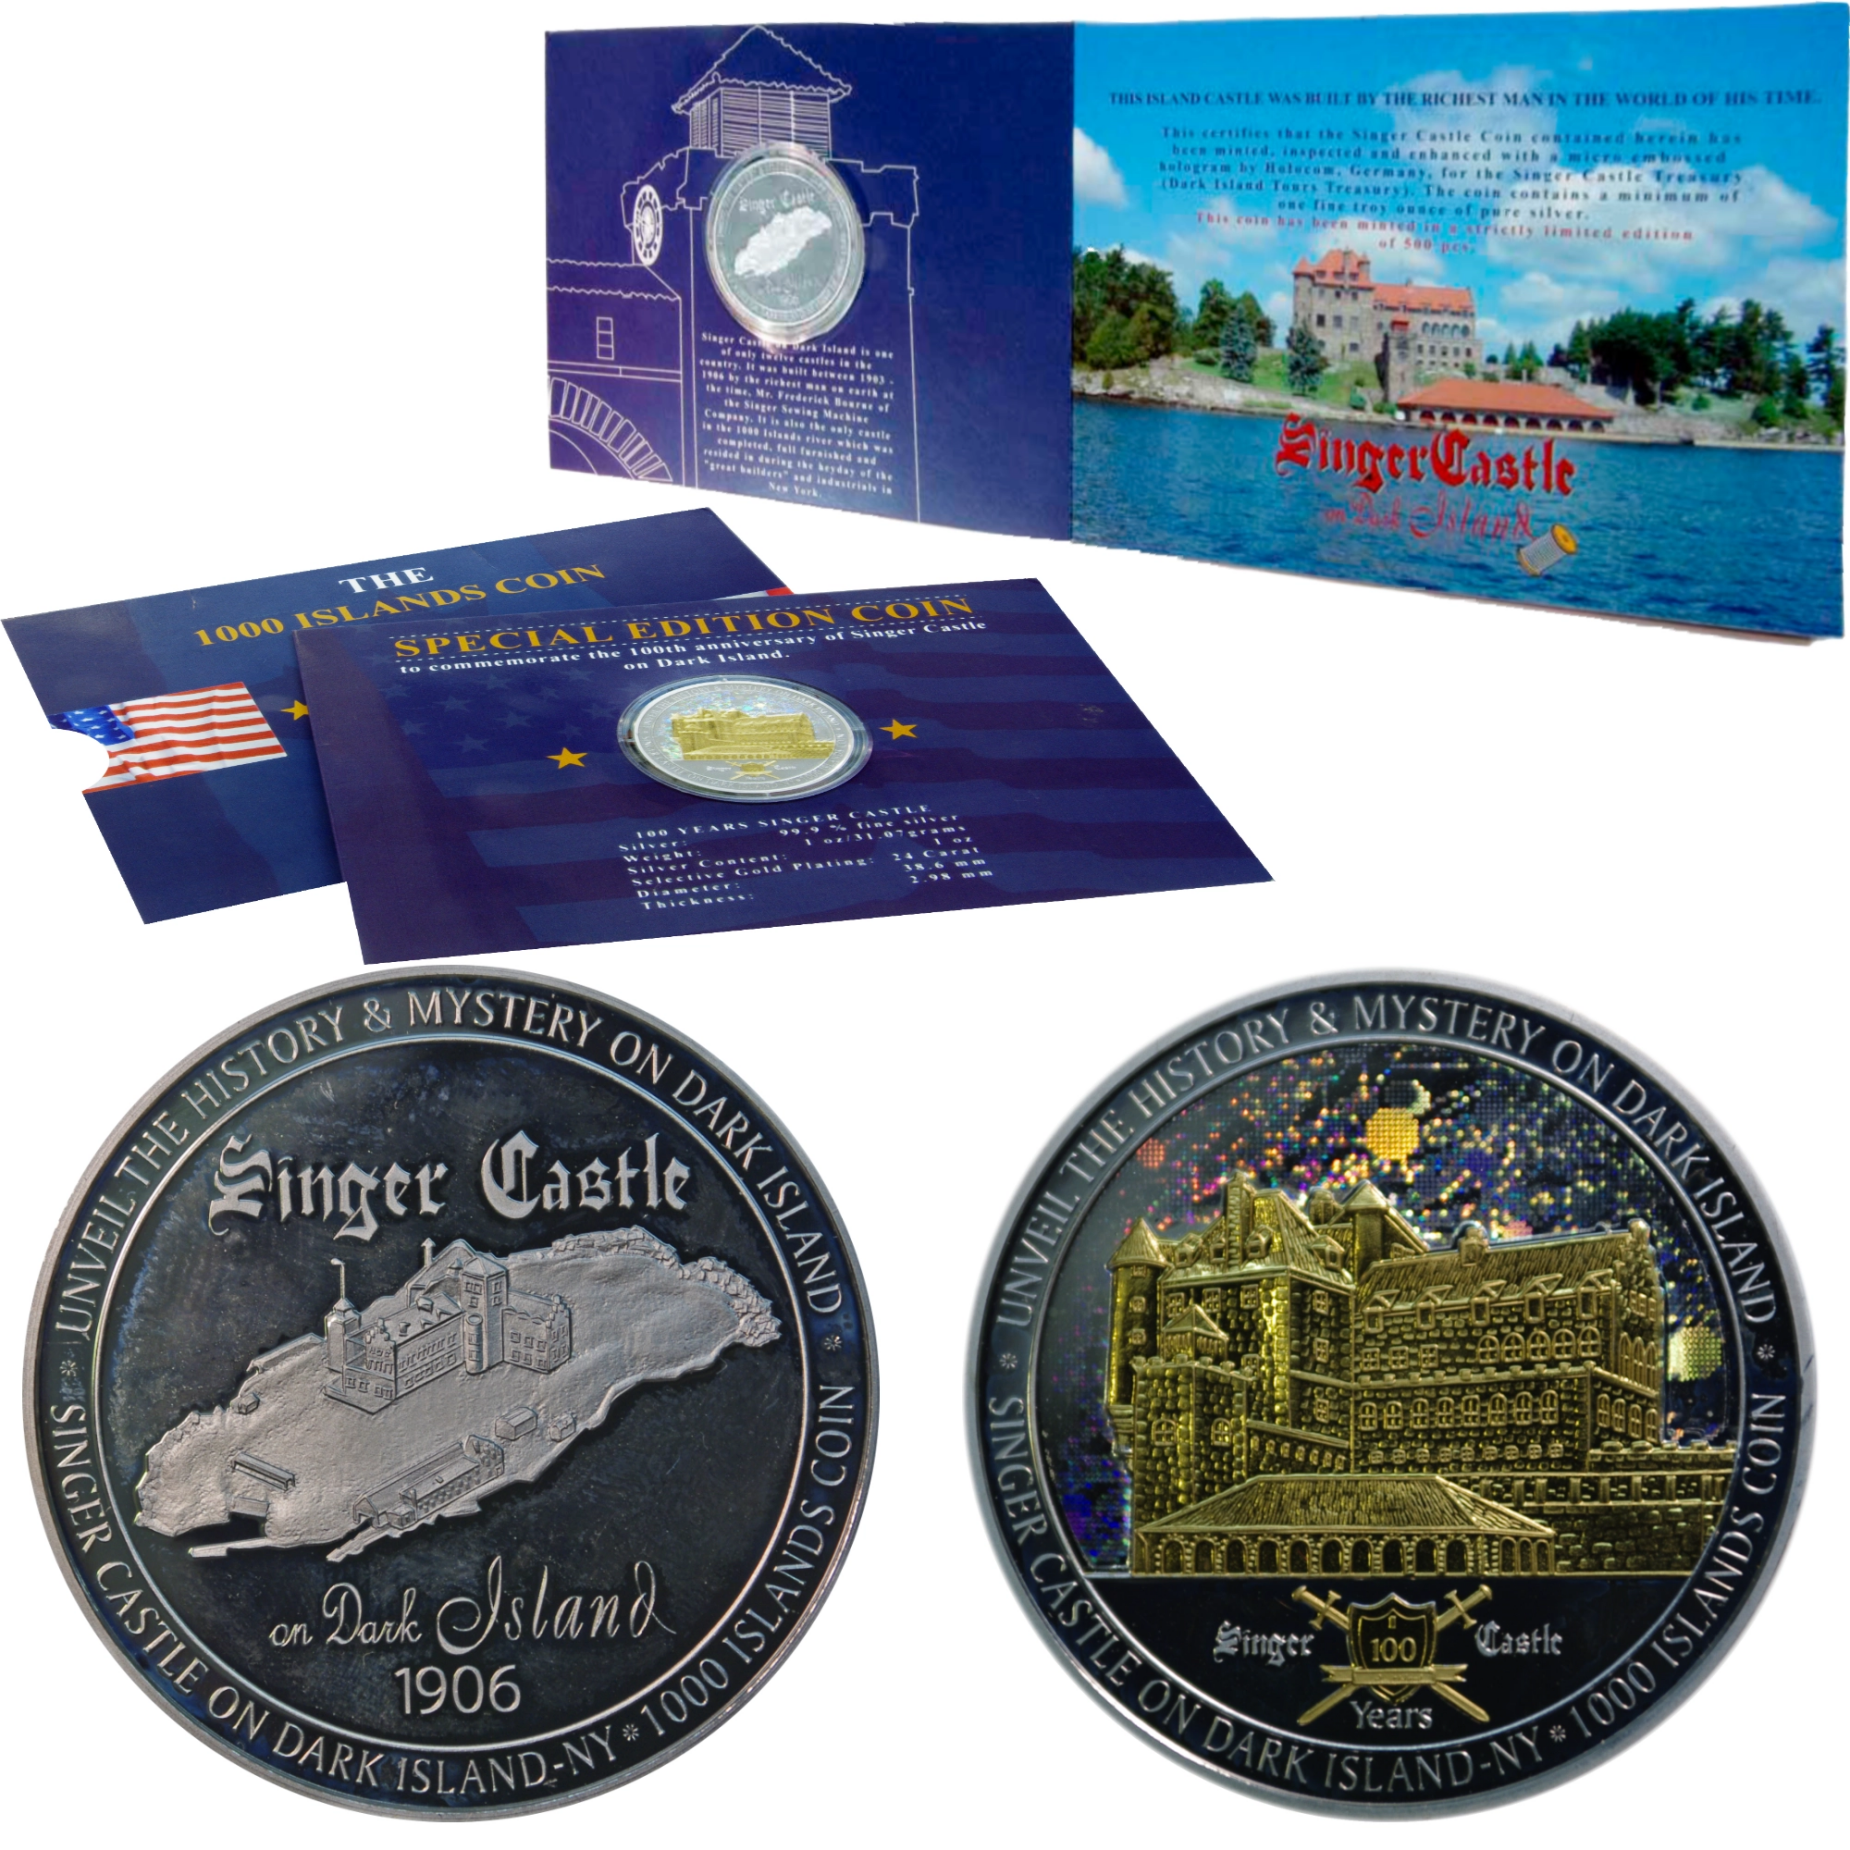 Silbermünze mit Hologramm zum hundertjährigen Bestehen des Singer Castle auf Dark Island mit Schober